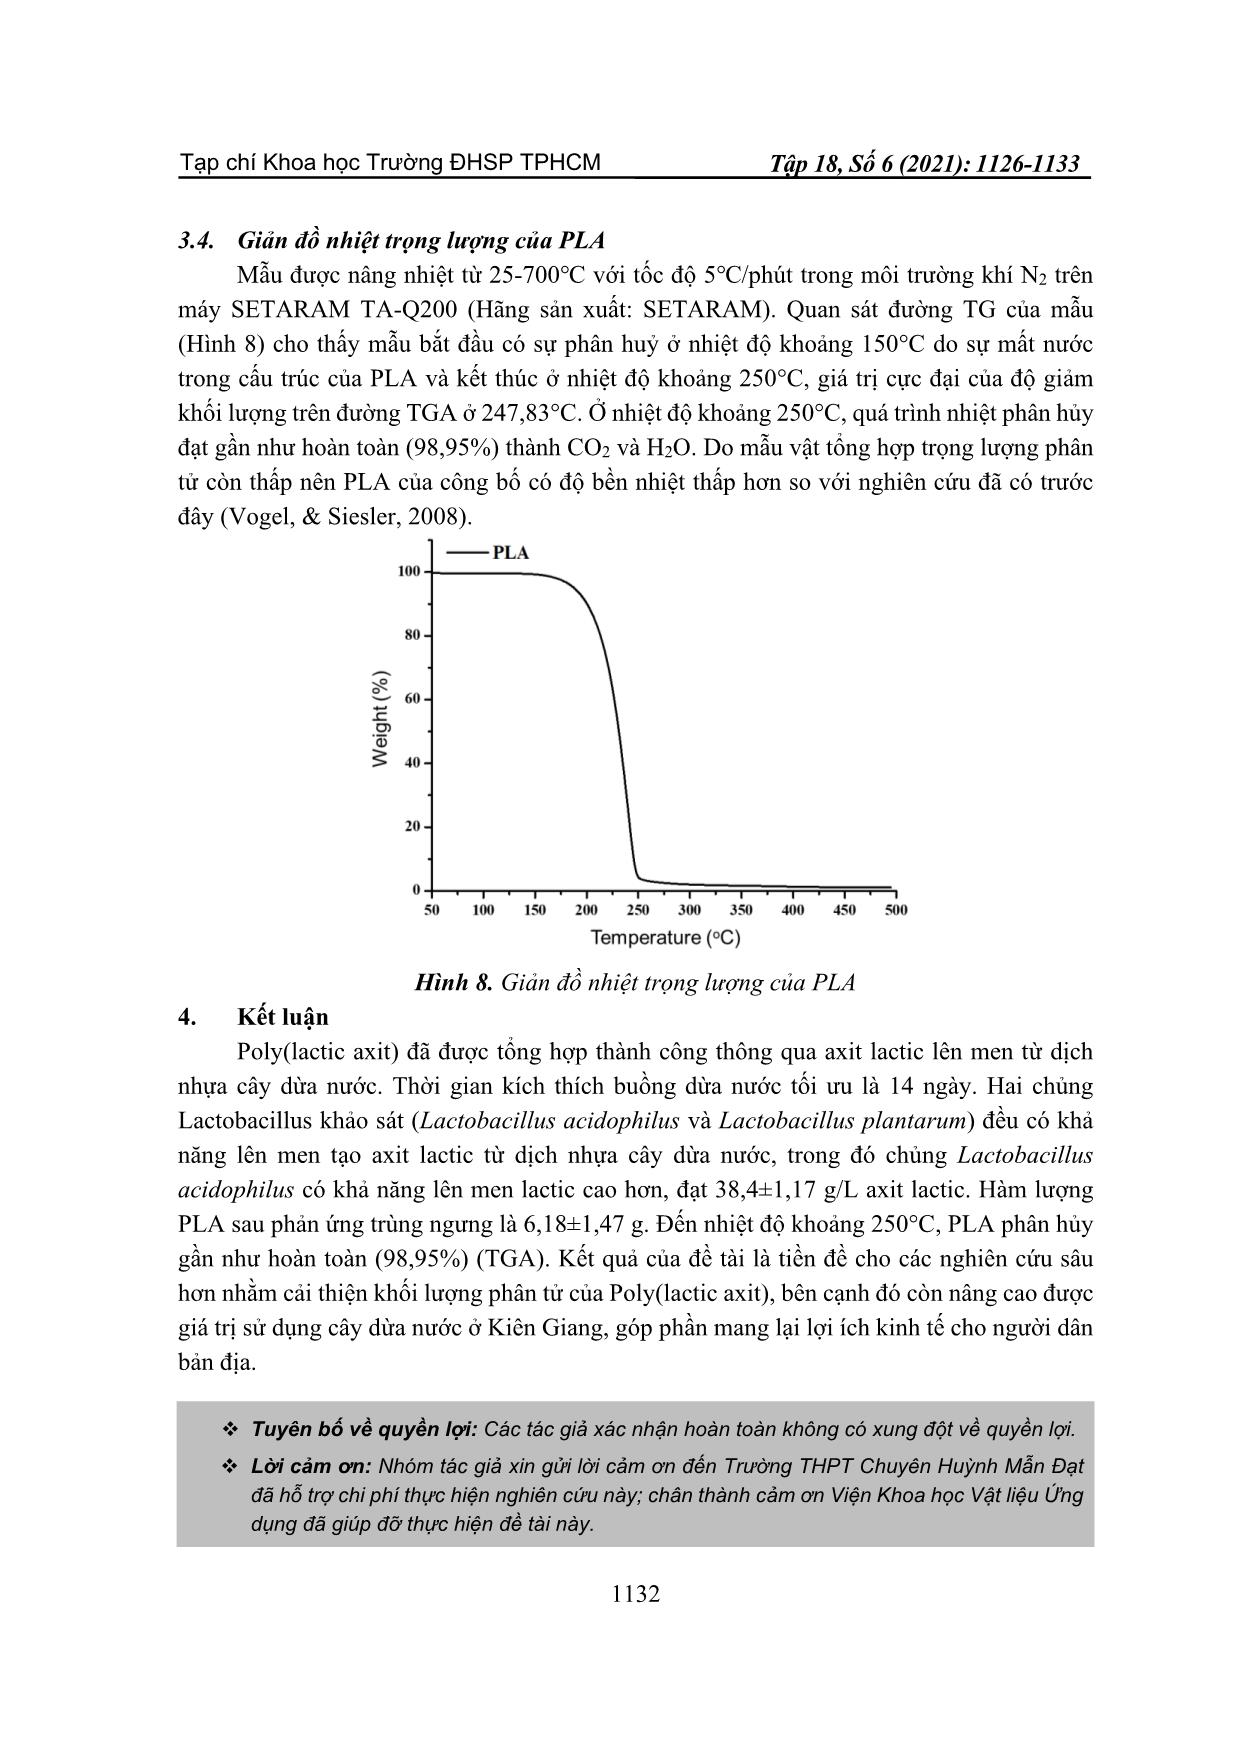 Nghiên cứu tổng hợp poly(lactic axit) từ dịch nhựa cây dừa nước Kiên Giang (nypa fruticans) trang 7